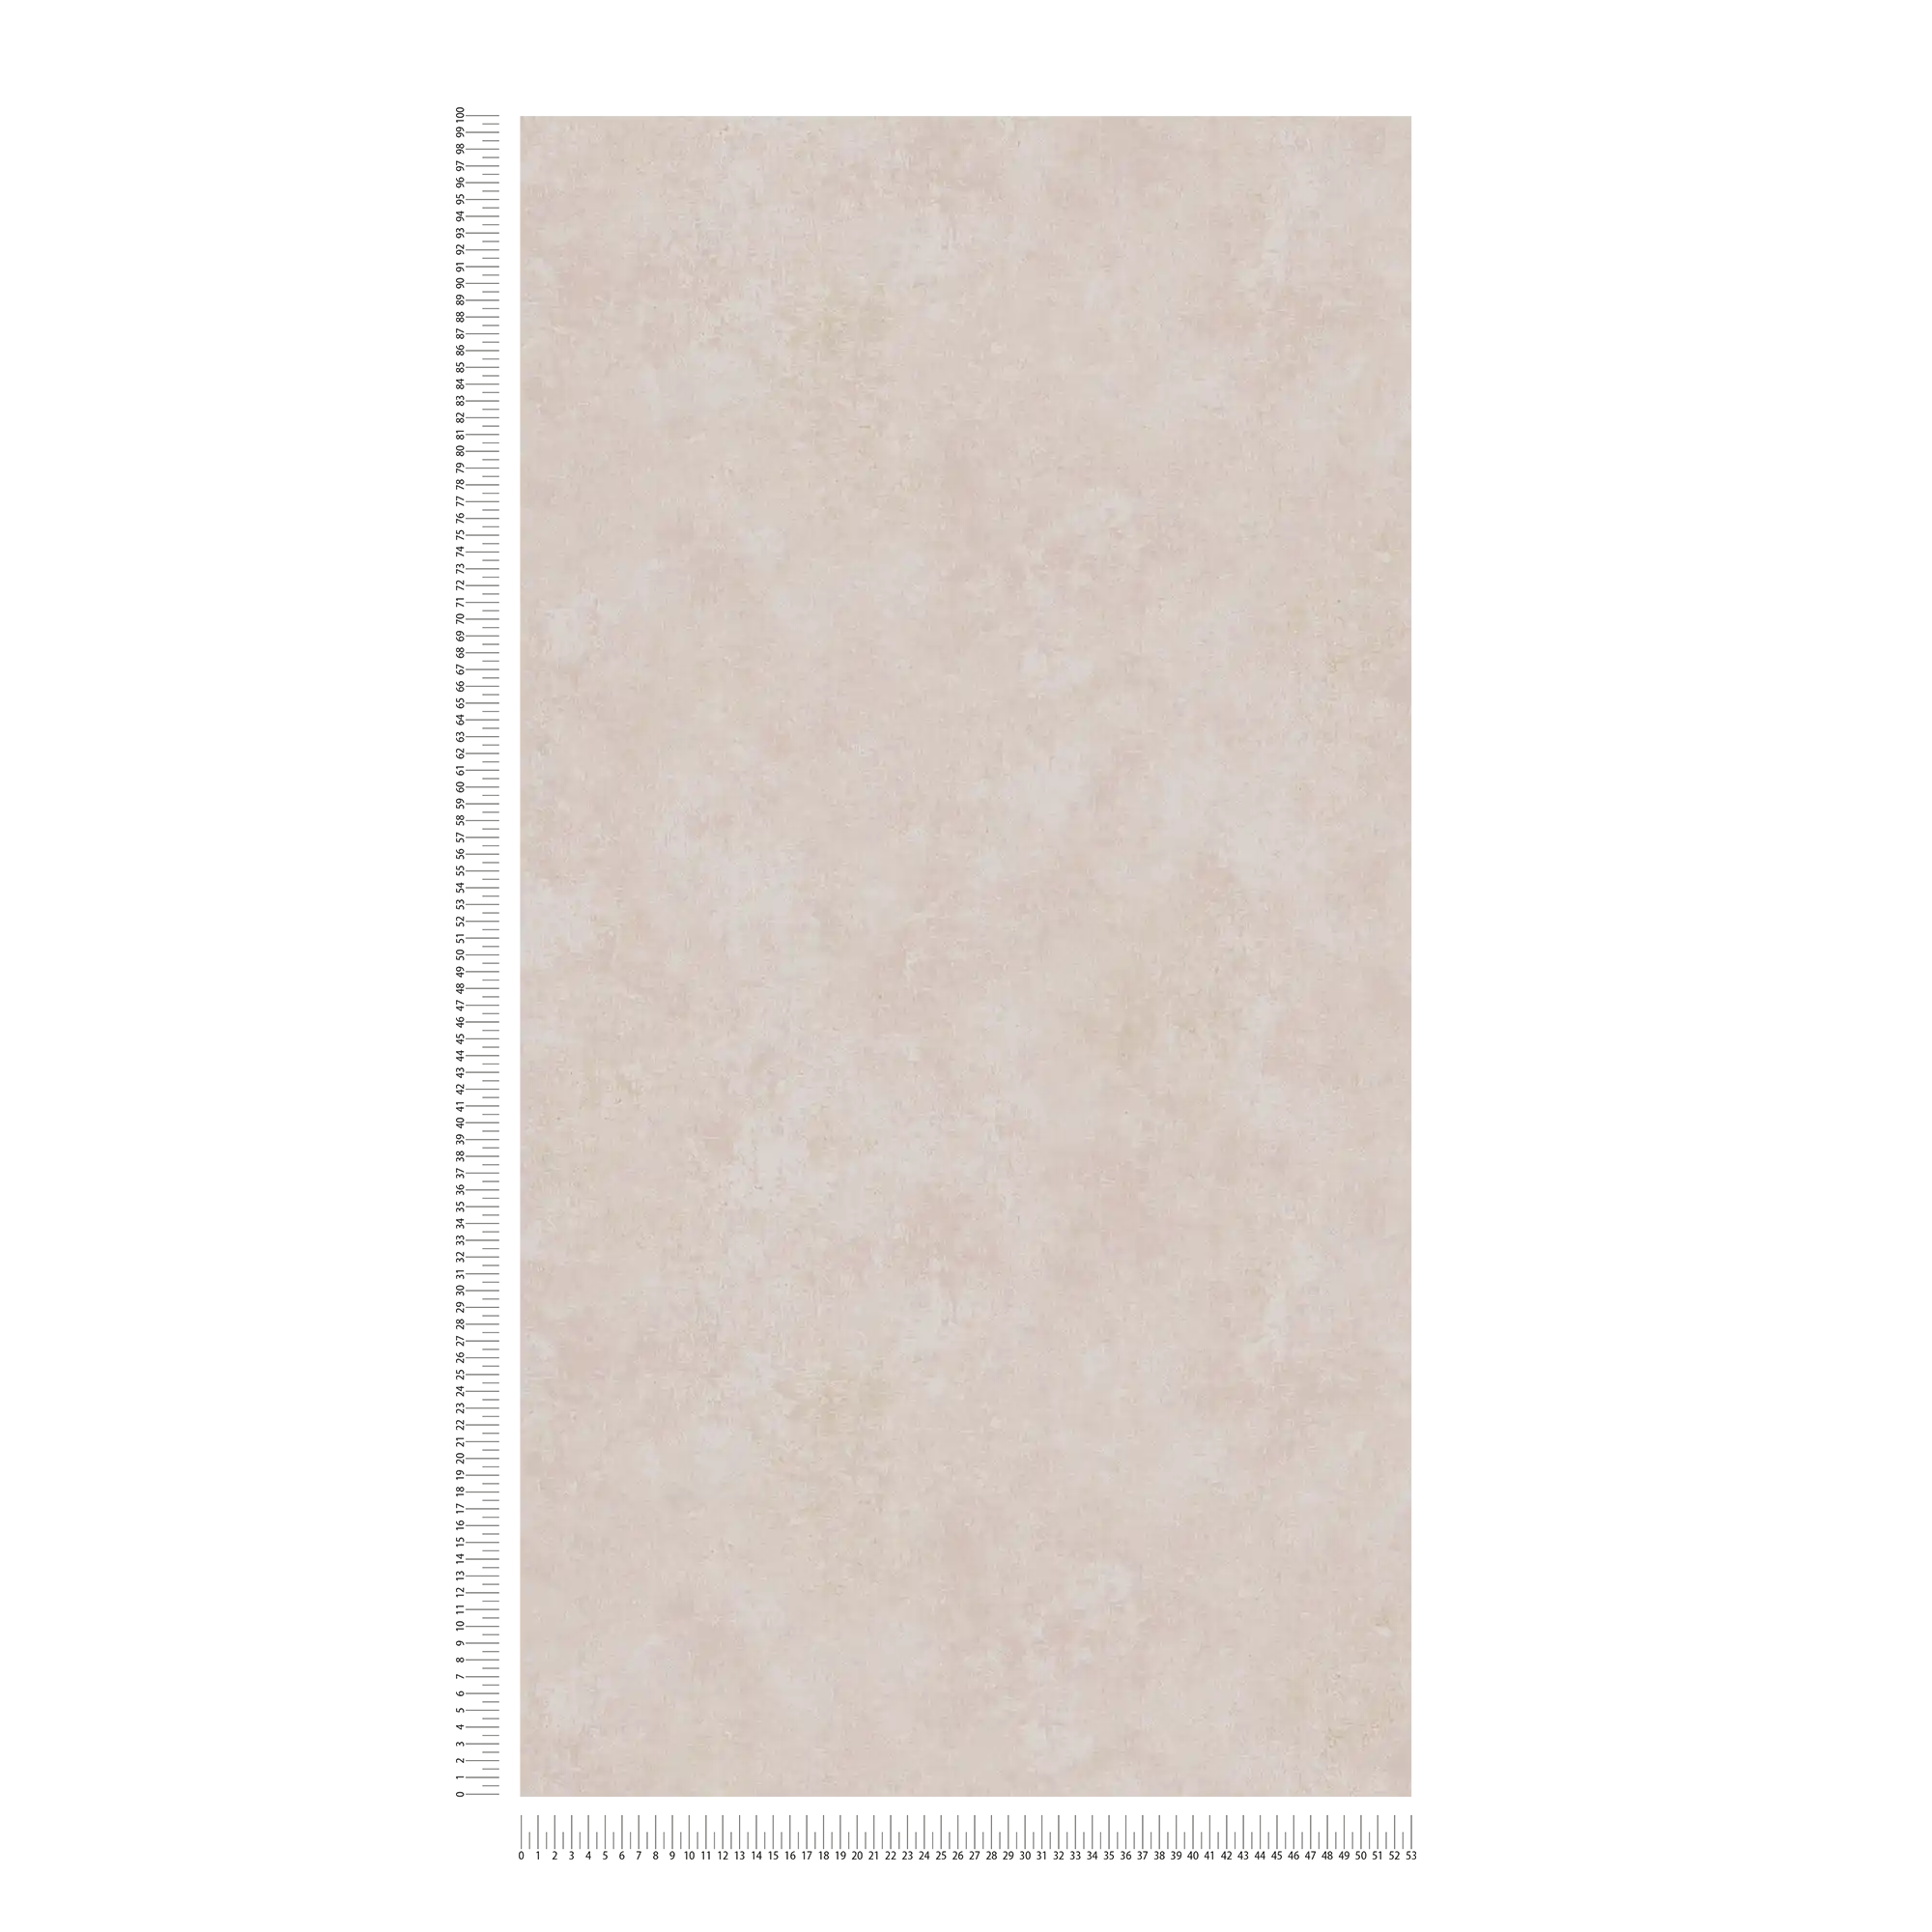             Papier peint intissé uni aspect plâtre, motifs usés & rétro - rose, crème
        